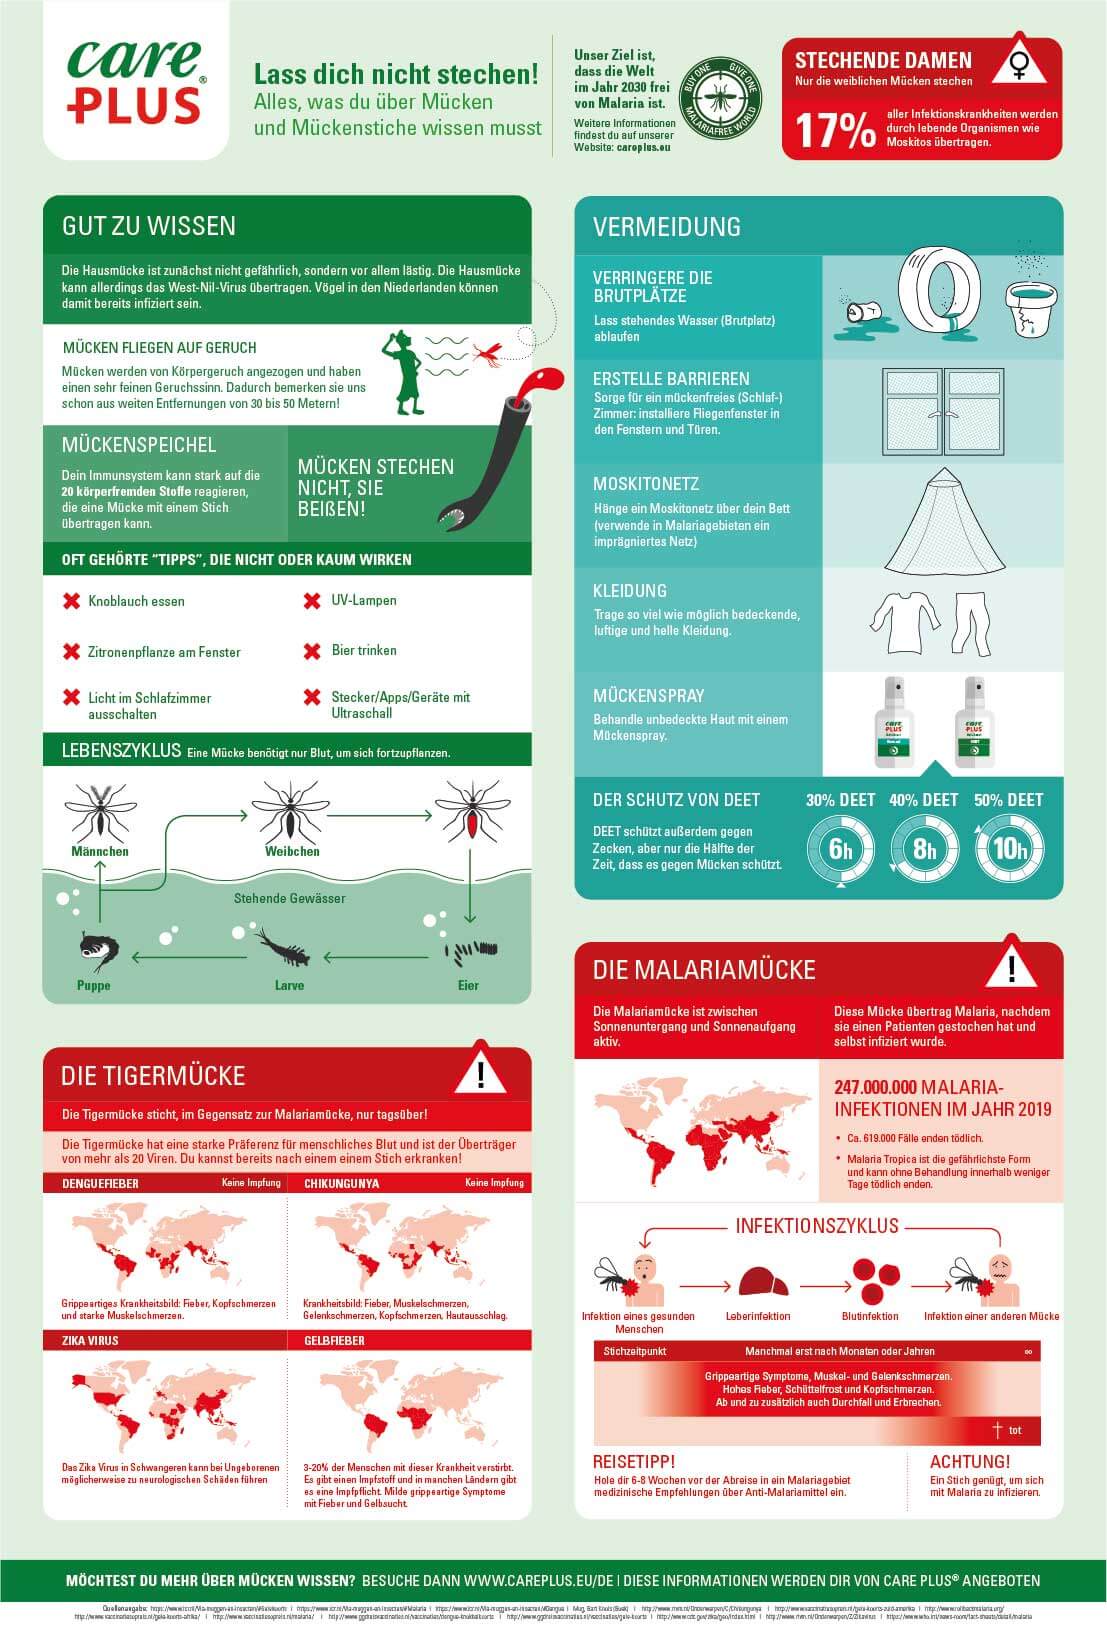 Lesen Sie in dieser Infografik alles über Mücken